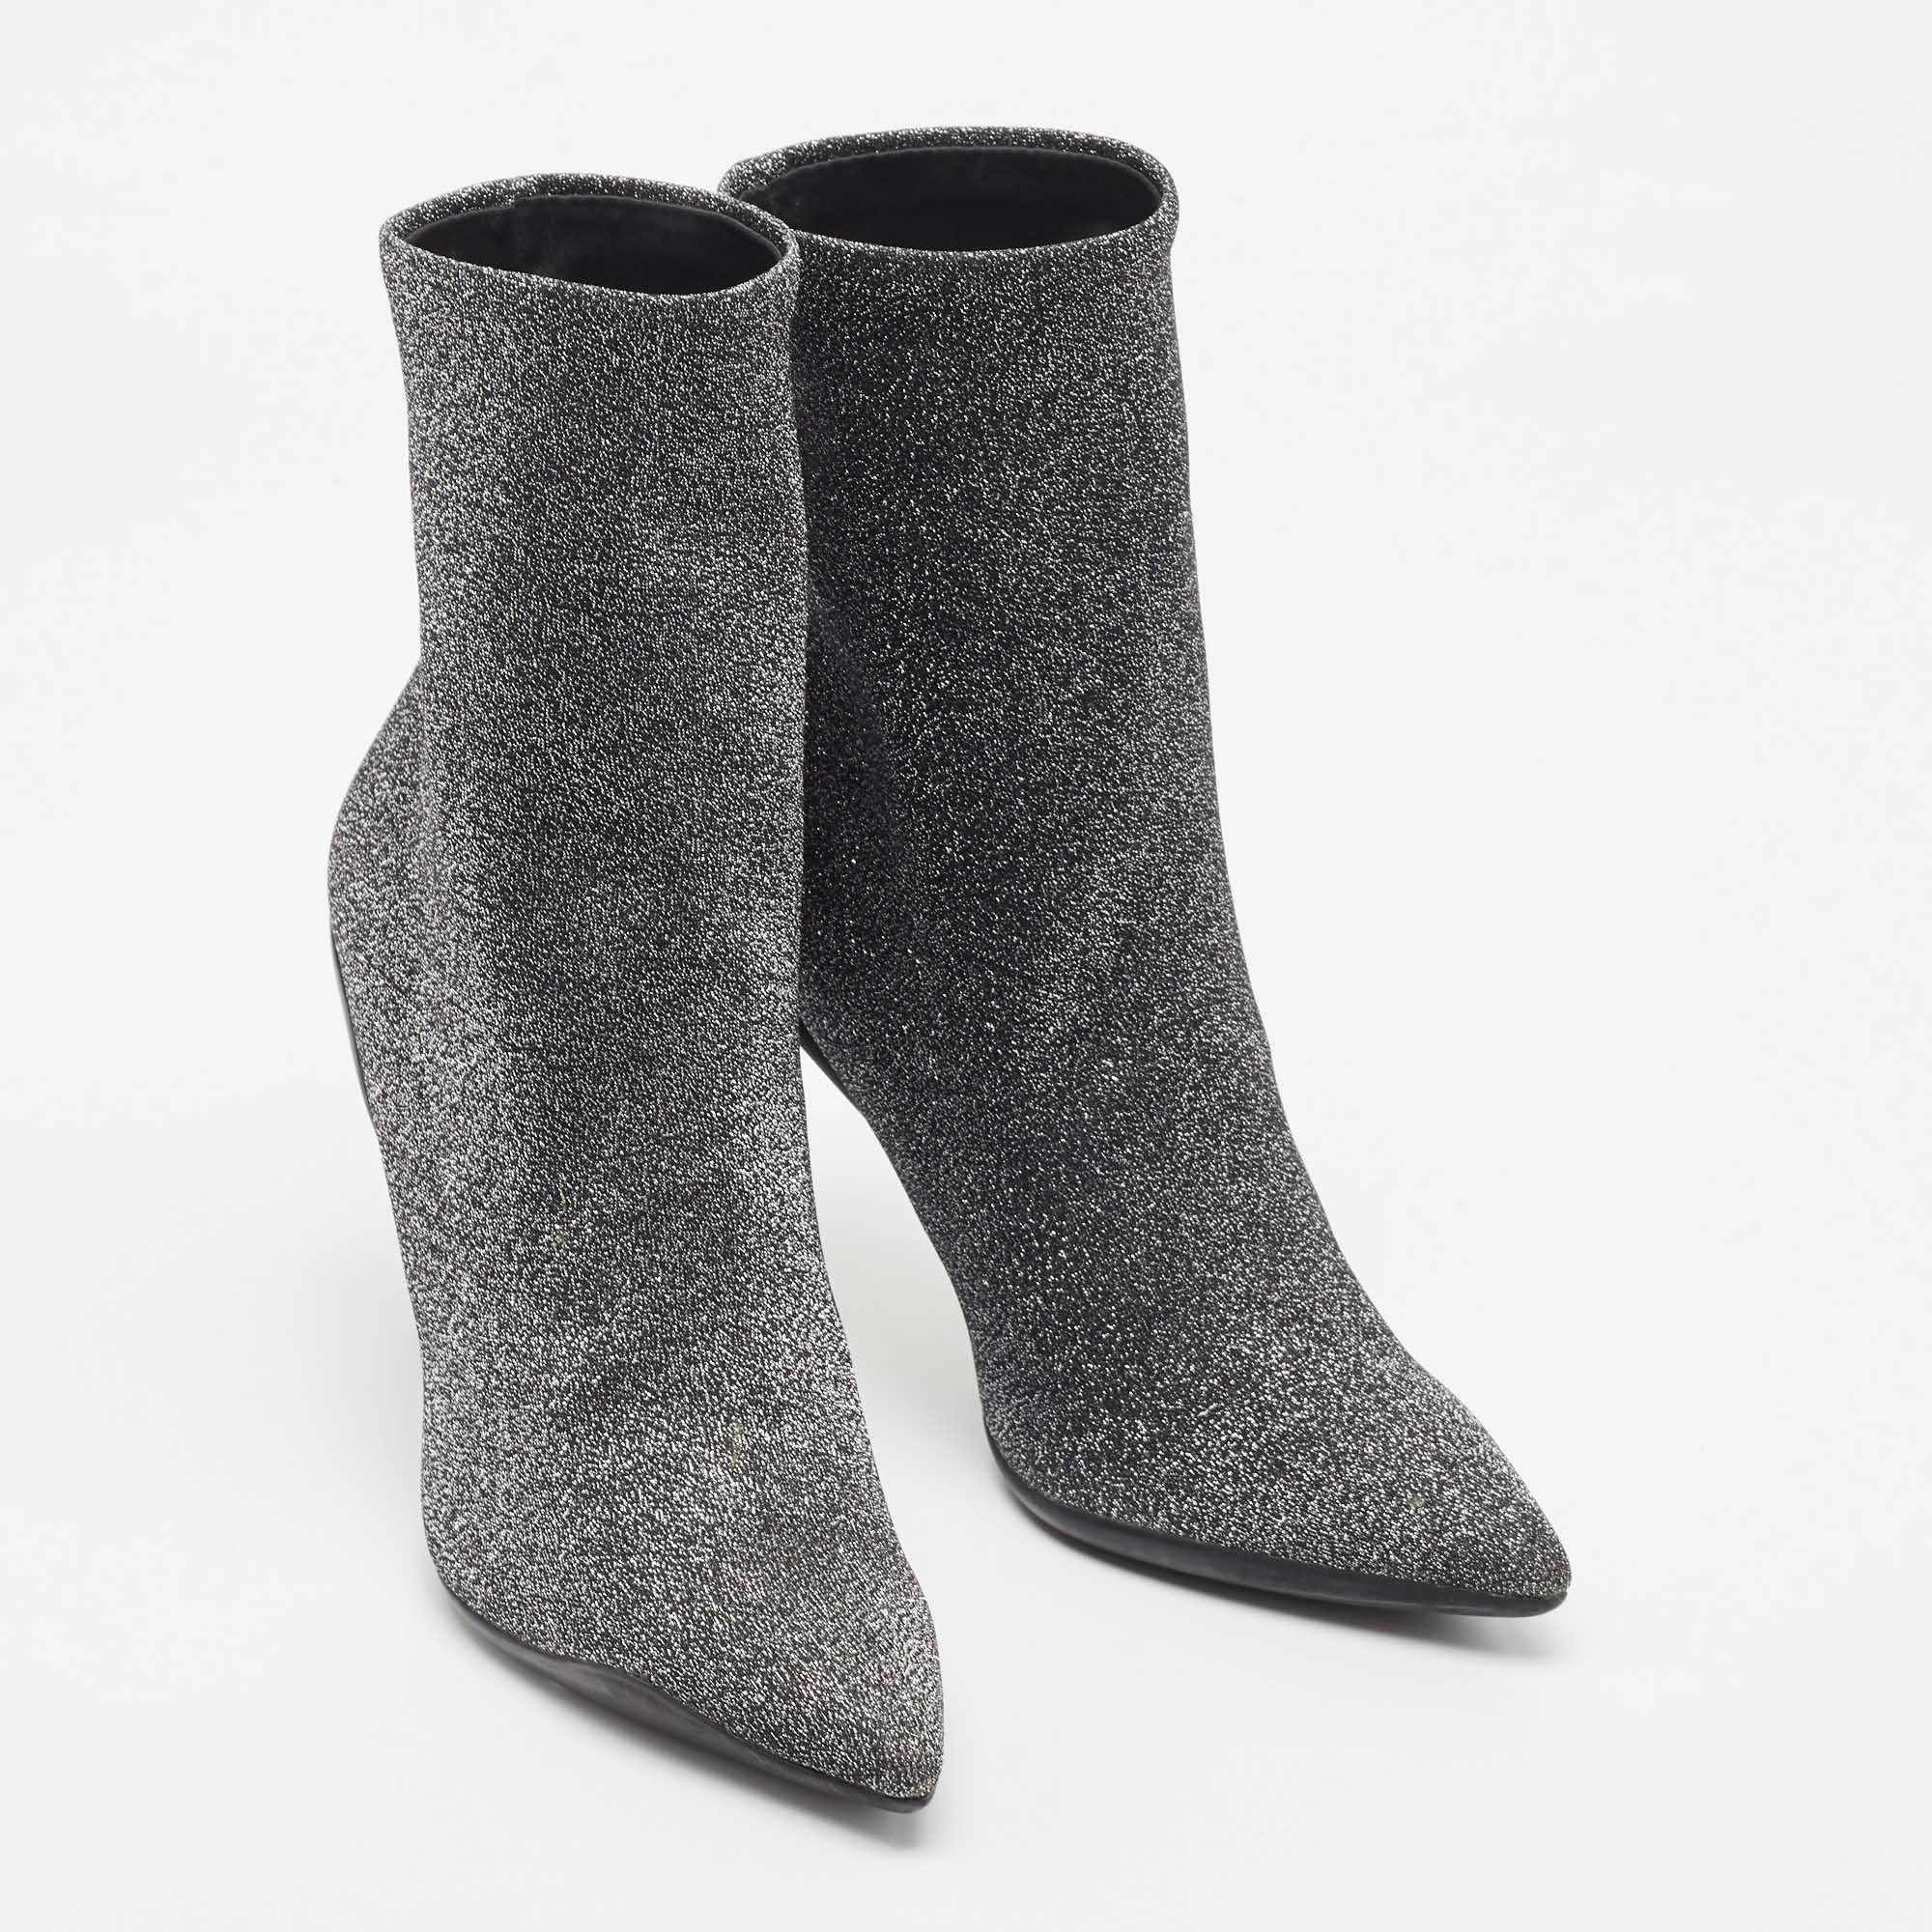 Rene Caovilla Silver Glitter Fabric Ankle Boots Size 37